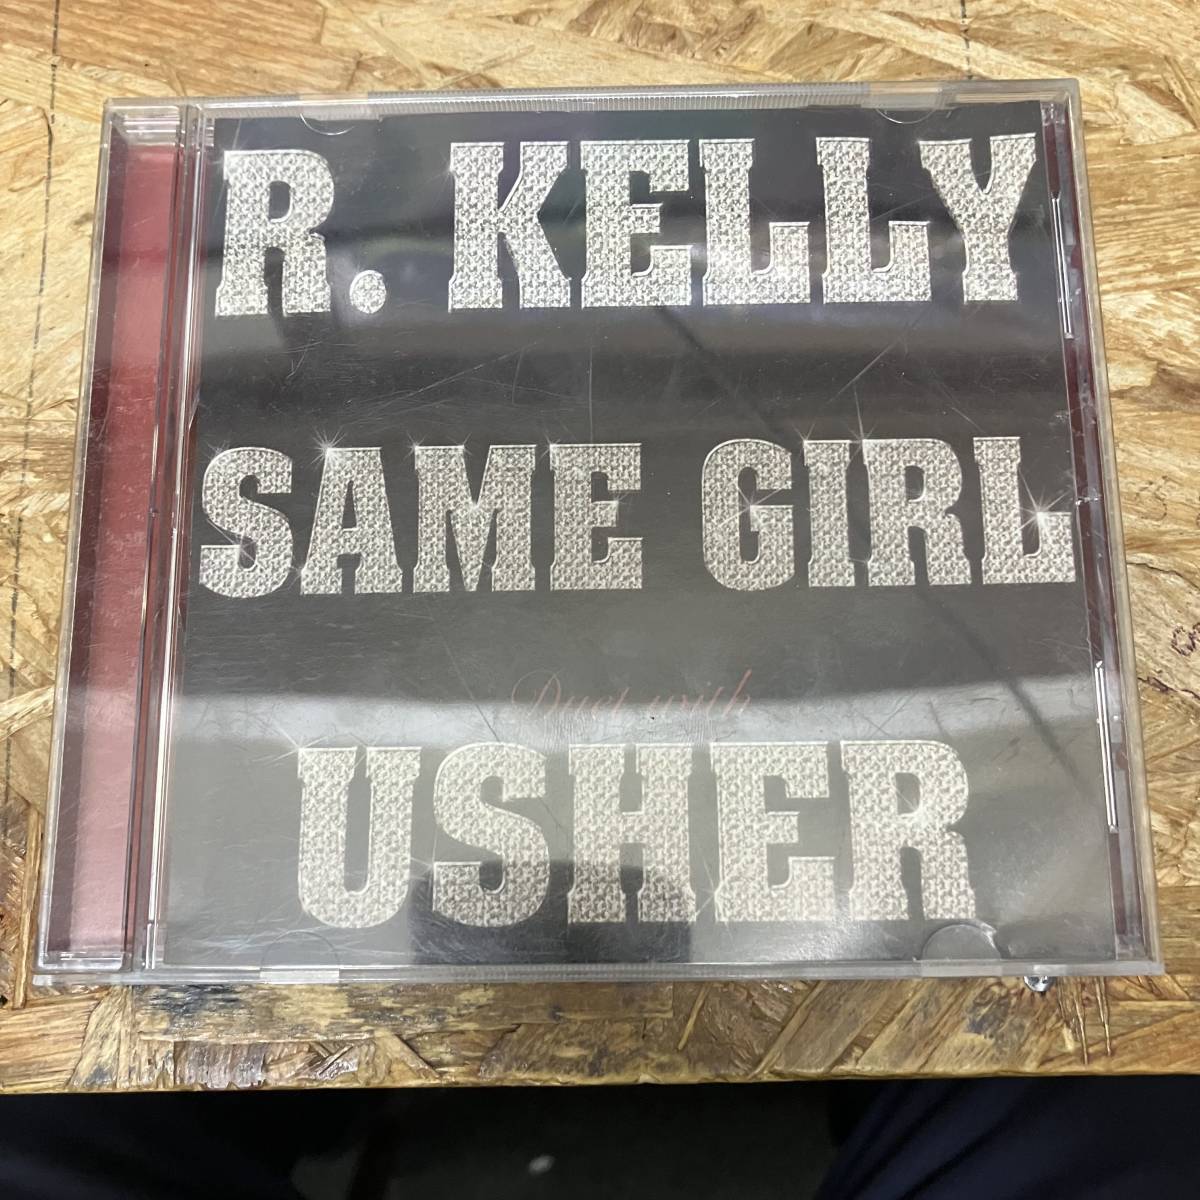 シ● HIPHOP,R&B R. KELLY - SAME GIRL DUET WITH USHER INST,シングル!,PROMO盤! CD 中古品_画像1